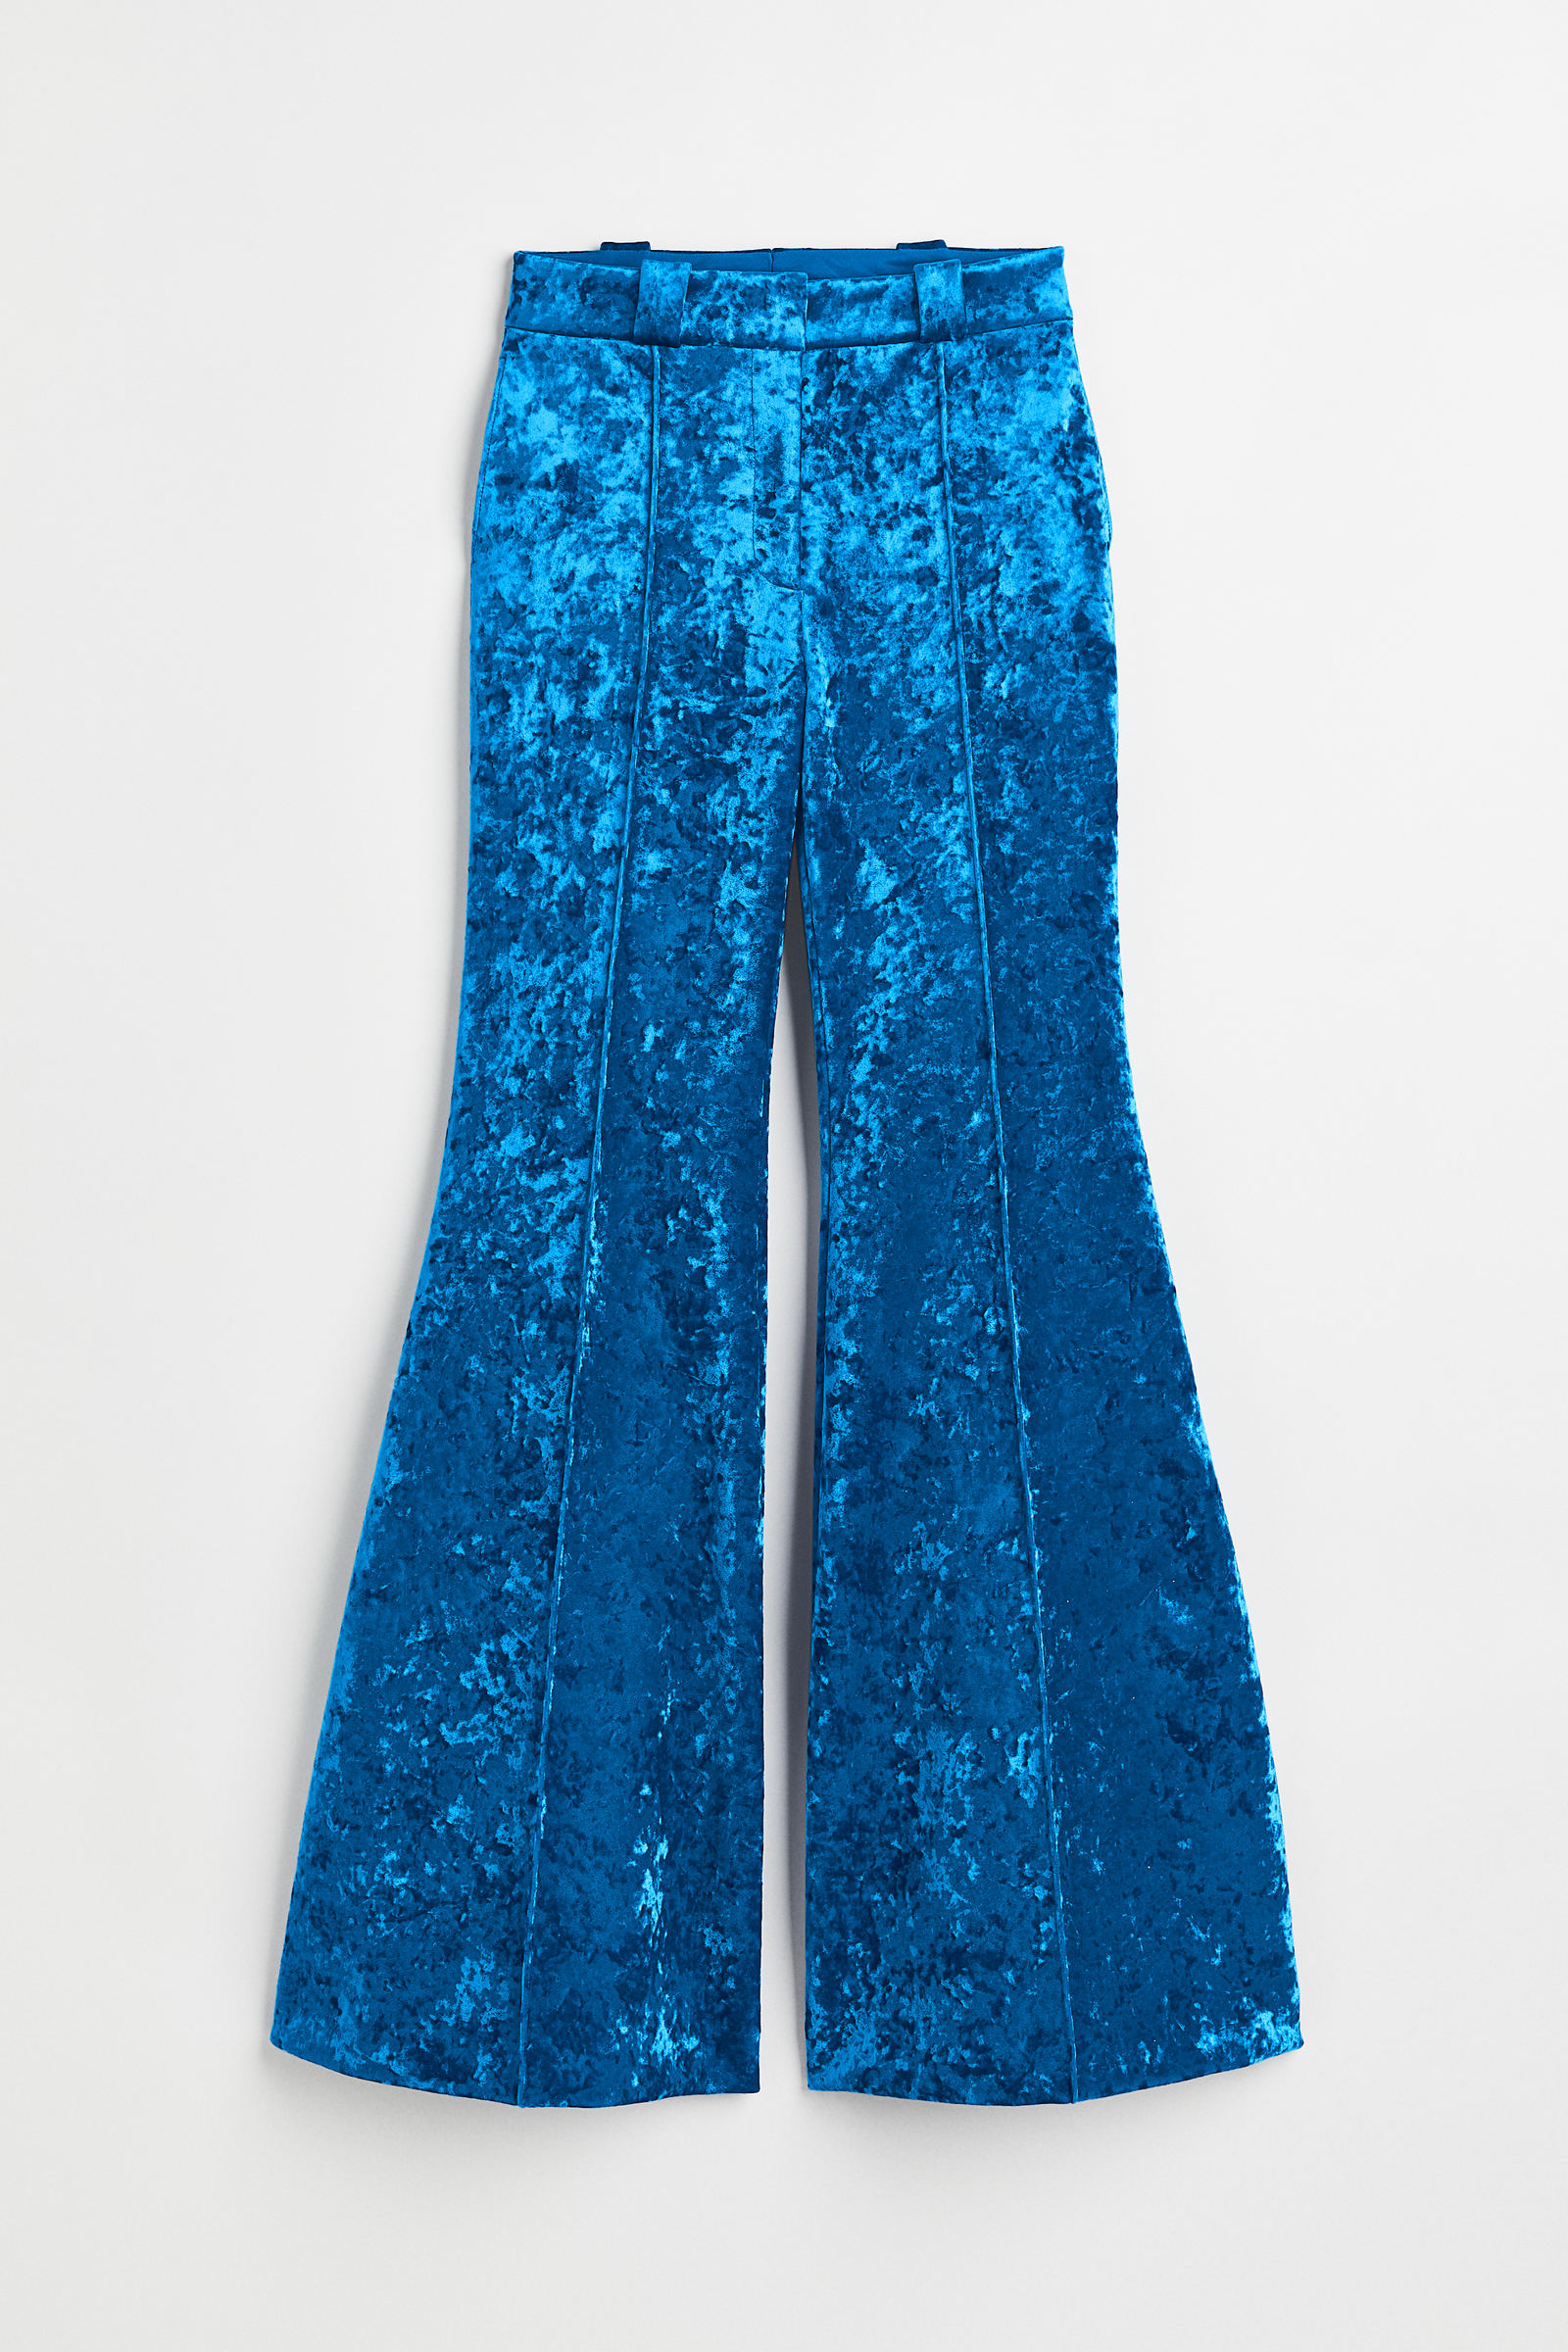 Pantalón terciopelo azul noche – Mardemarbarcelona